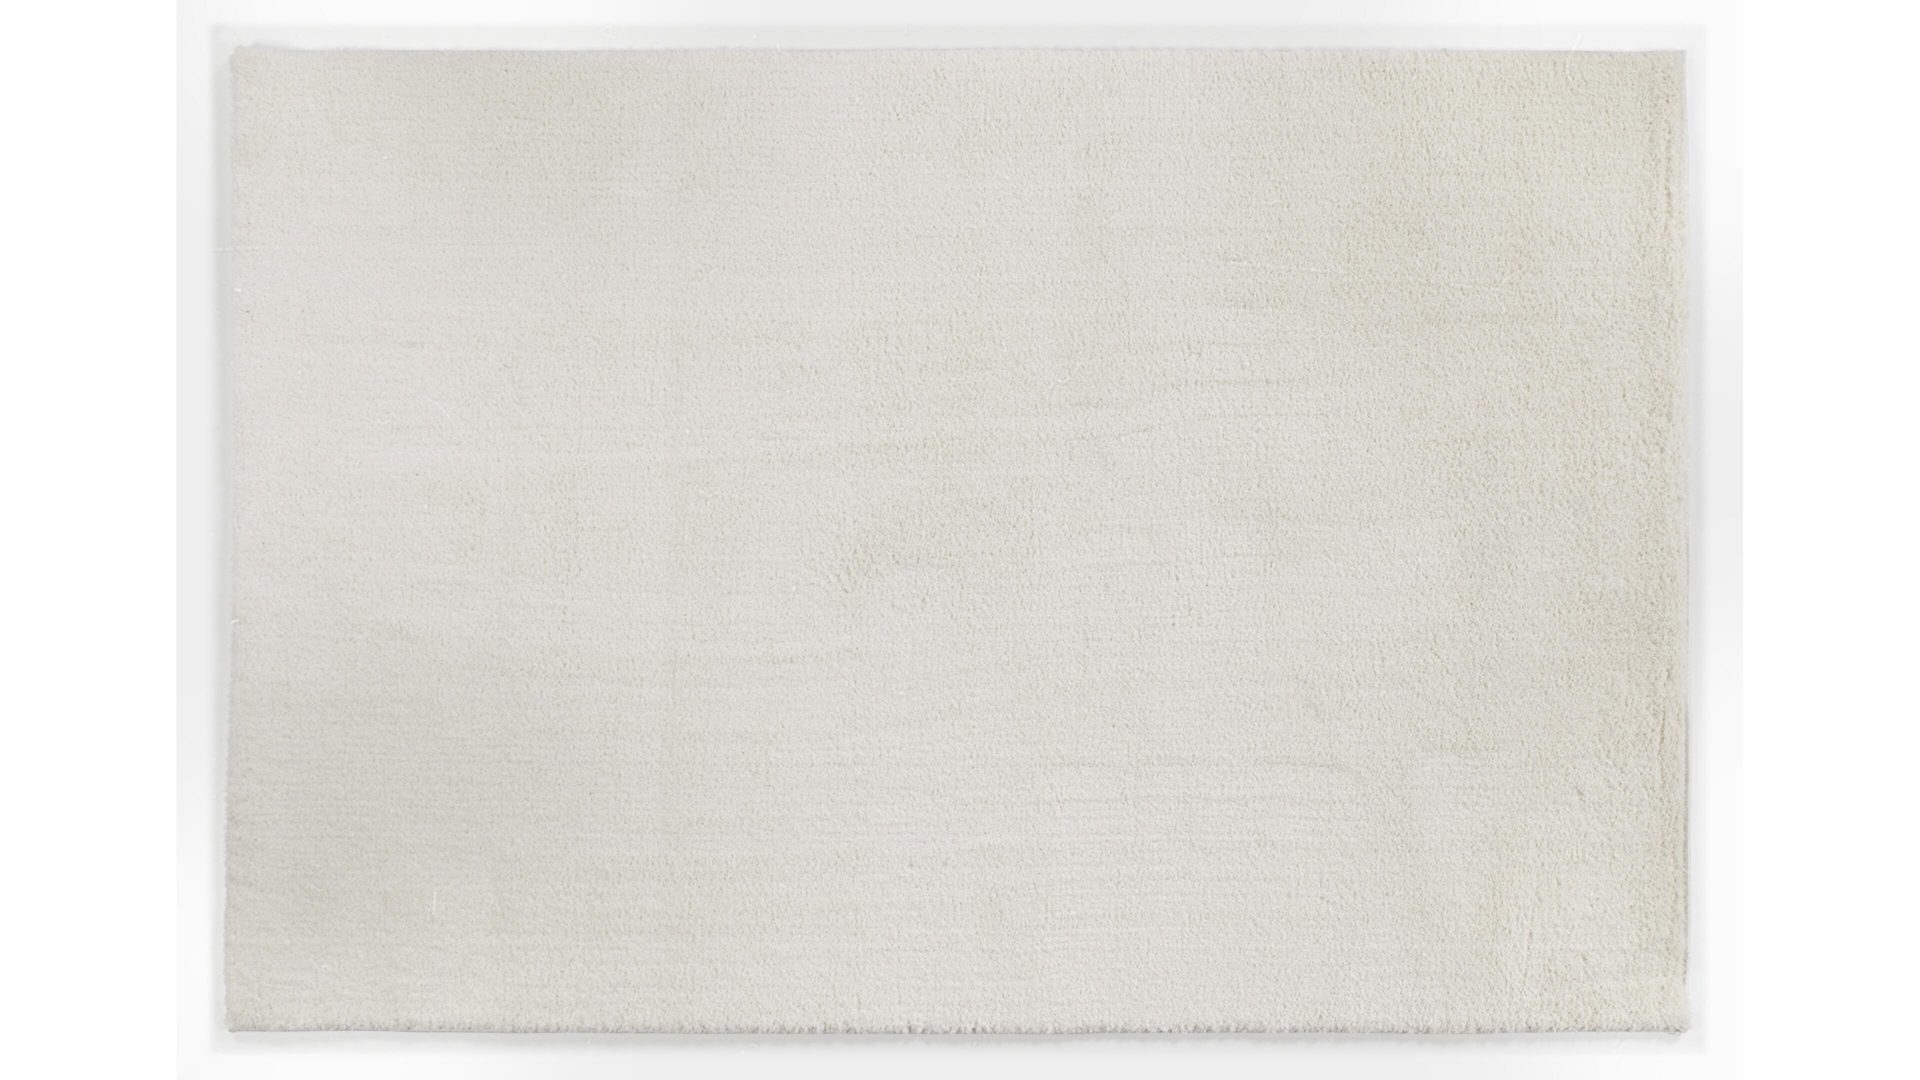 Hochflorteppich Oci aus Kunstfaser in Weiß Hochflorteppich Soft Dream für Ihre Wohnaccessoires cremefarbene Kunstfaser – ca. 160 x 230 cm